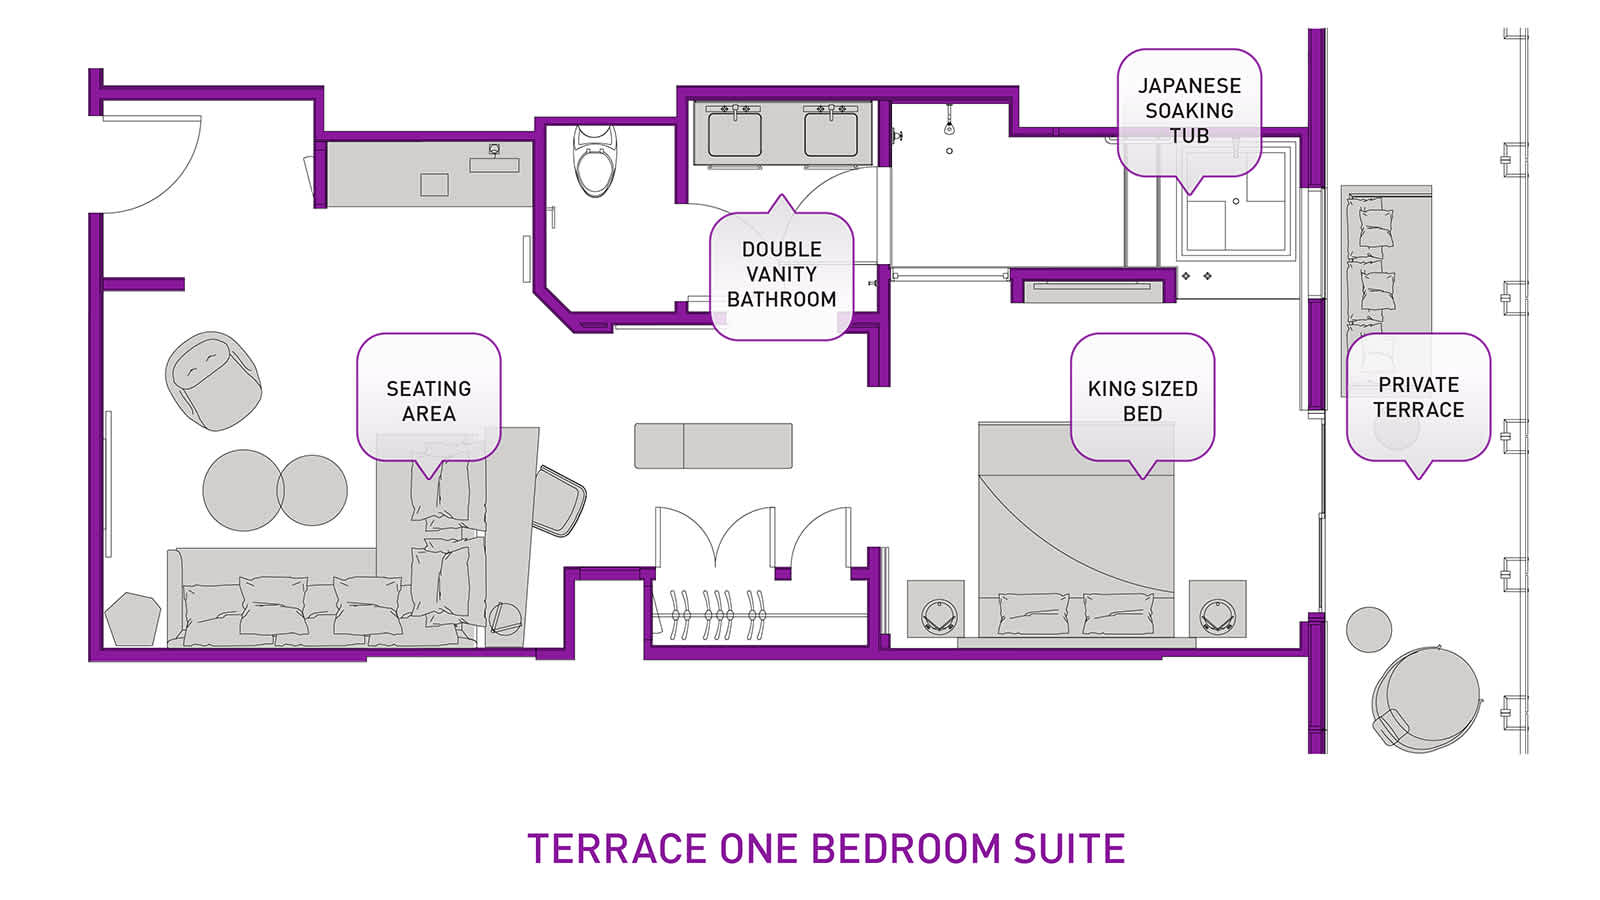 Terrace One Bedroom Suite Floor Plan